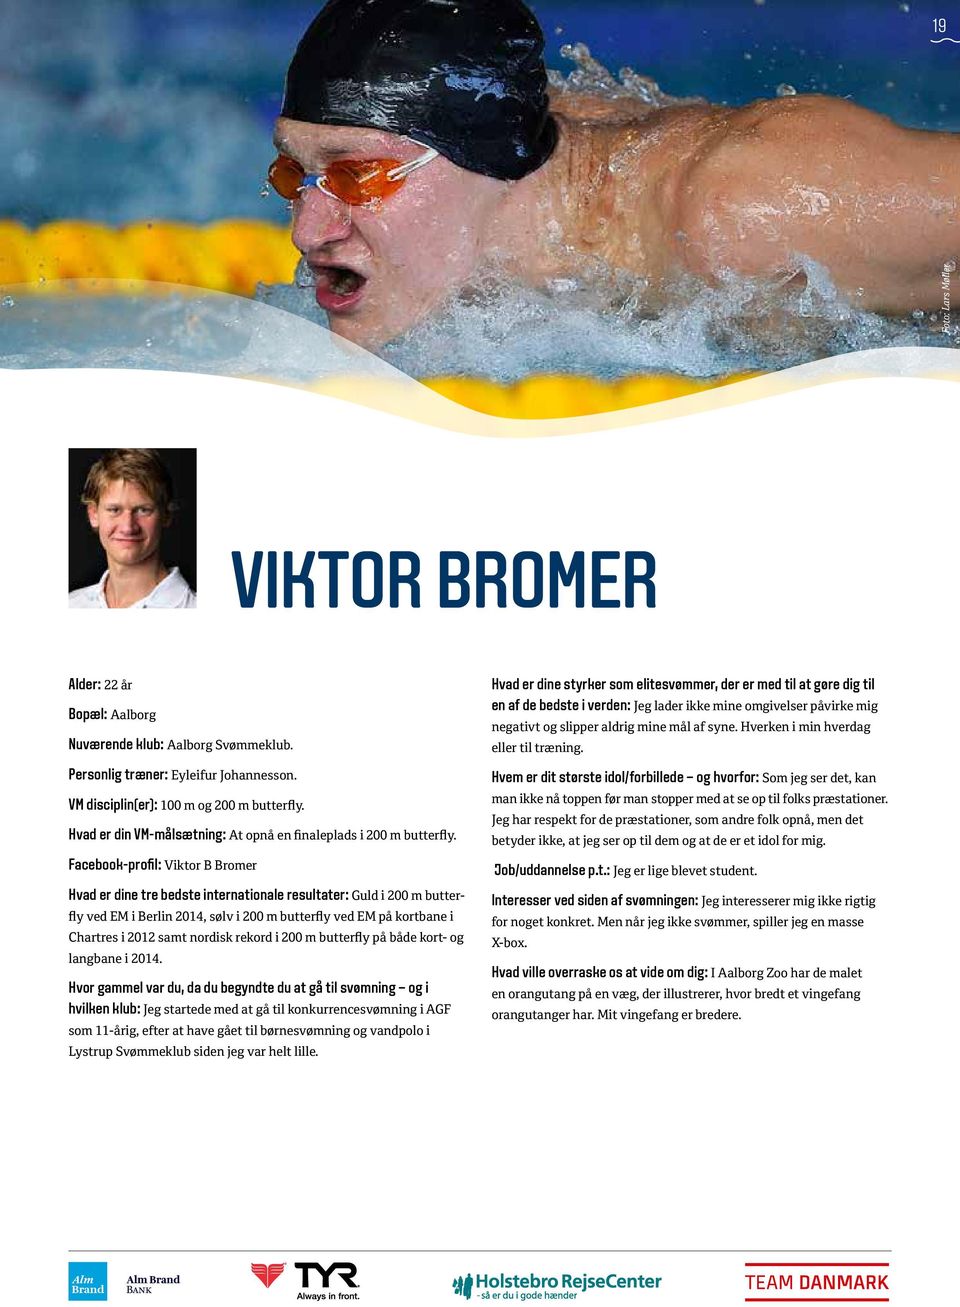 Facebook-profil: Viktor B Bromer Hvad er dine tre bedste internationale resultater: Guld i 200 m butterfly ved E i Berlin 2014, sølv i 200 m butterfly ved E på kortbane i Chartres i 2012 samt nordisk